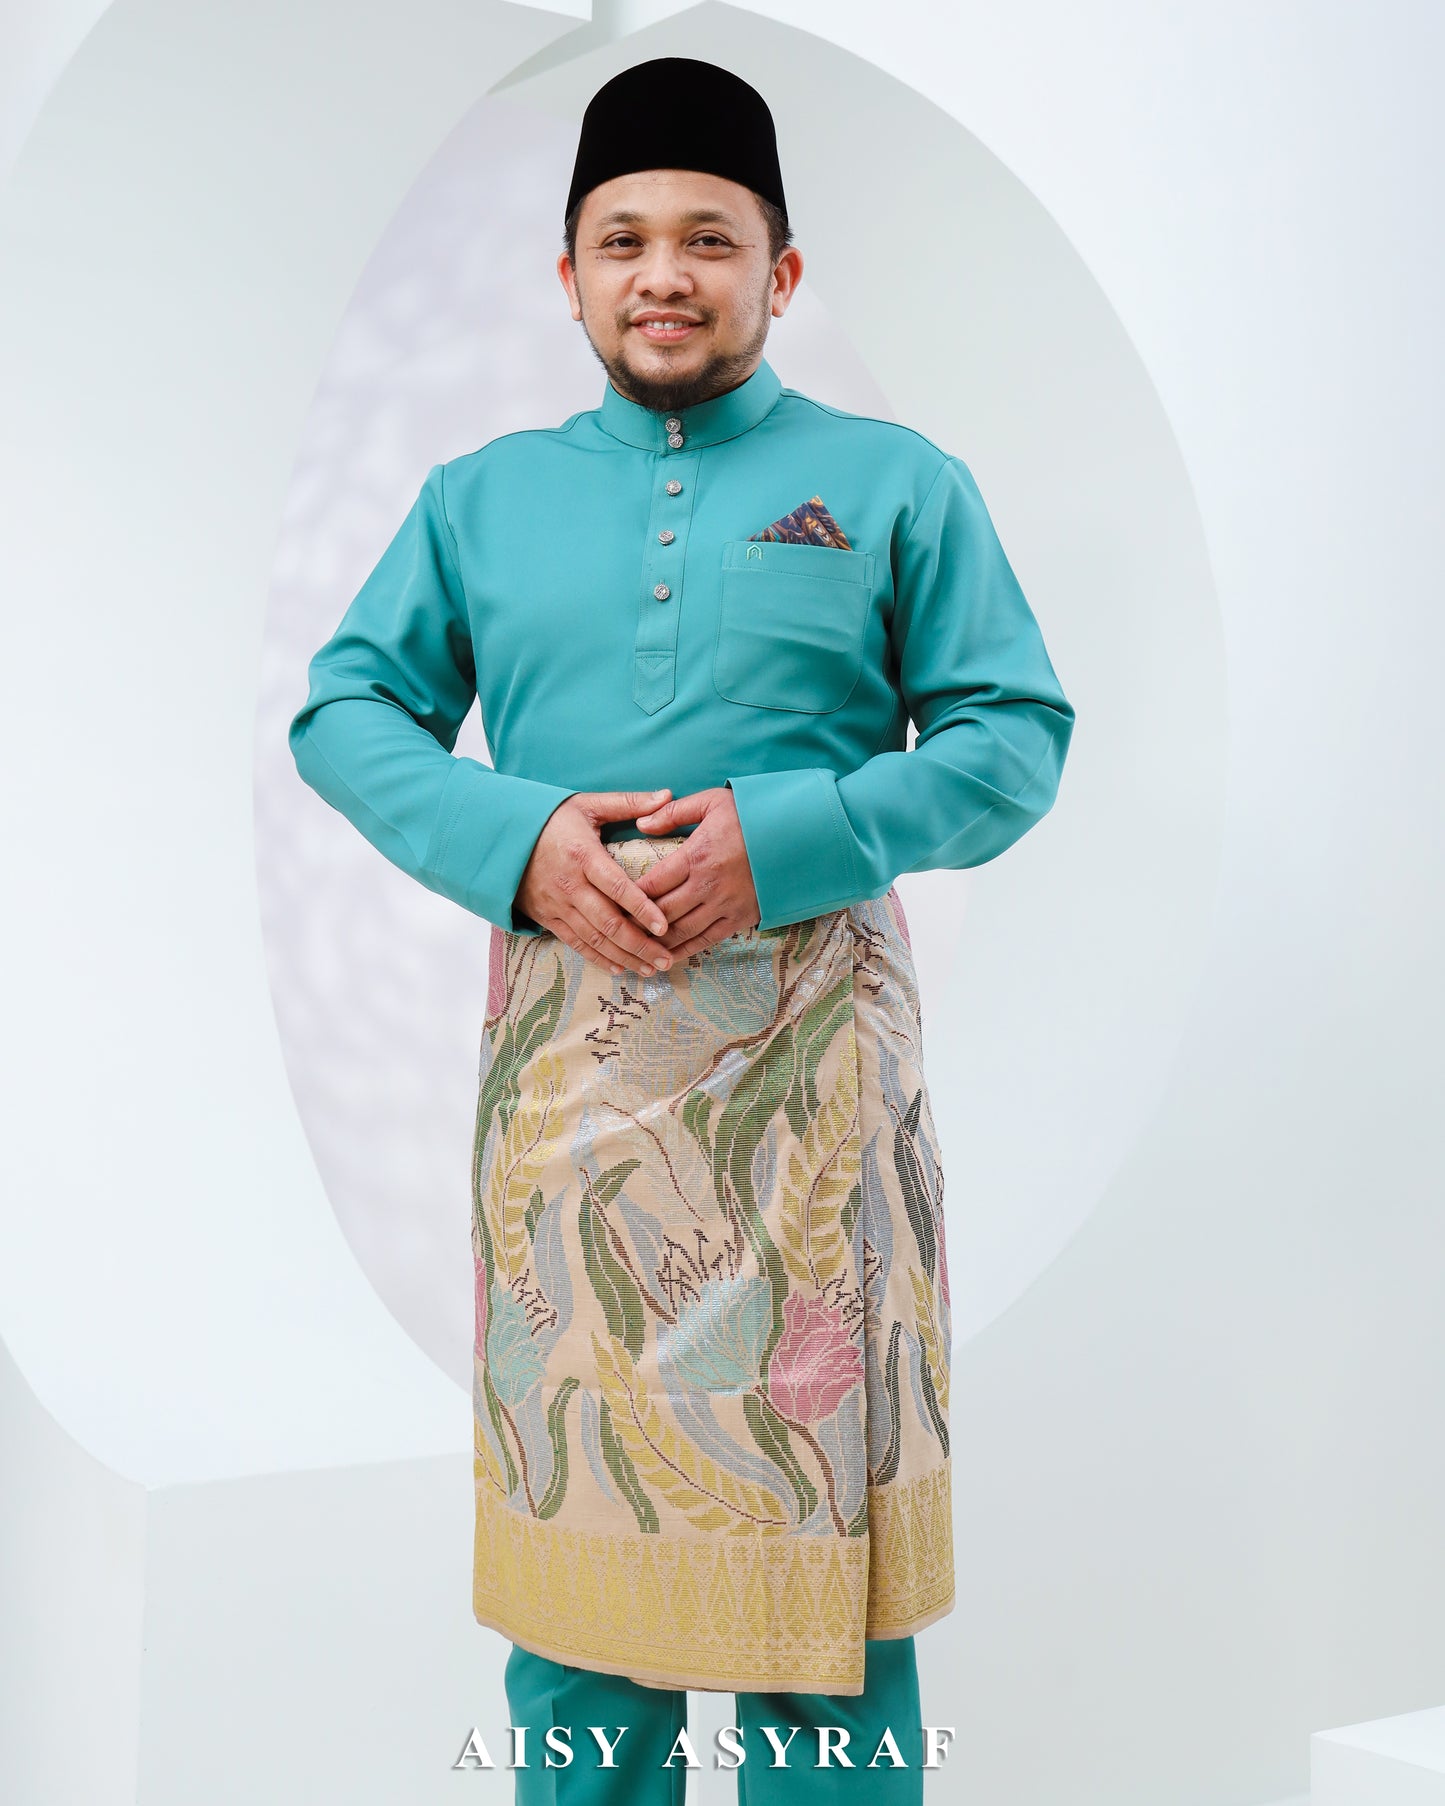 Baju Melayu Haseki - Turqouise